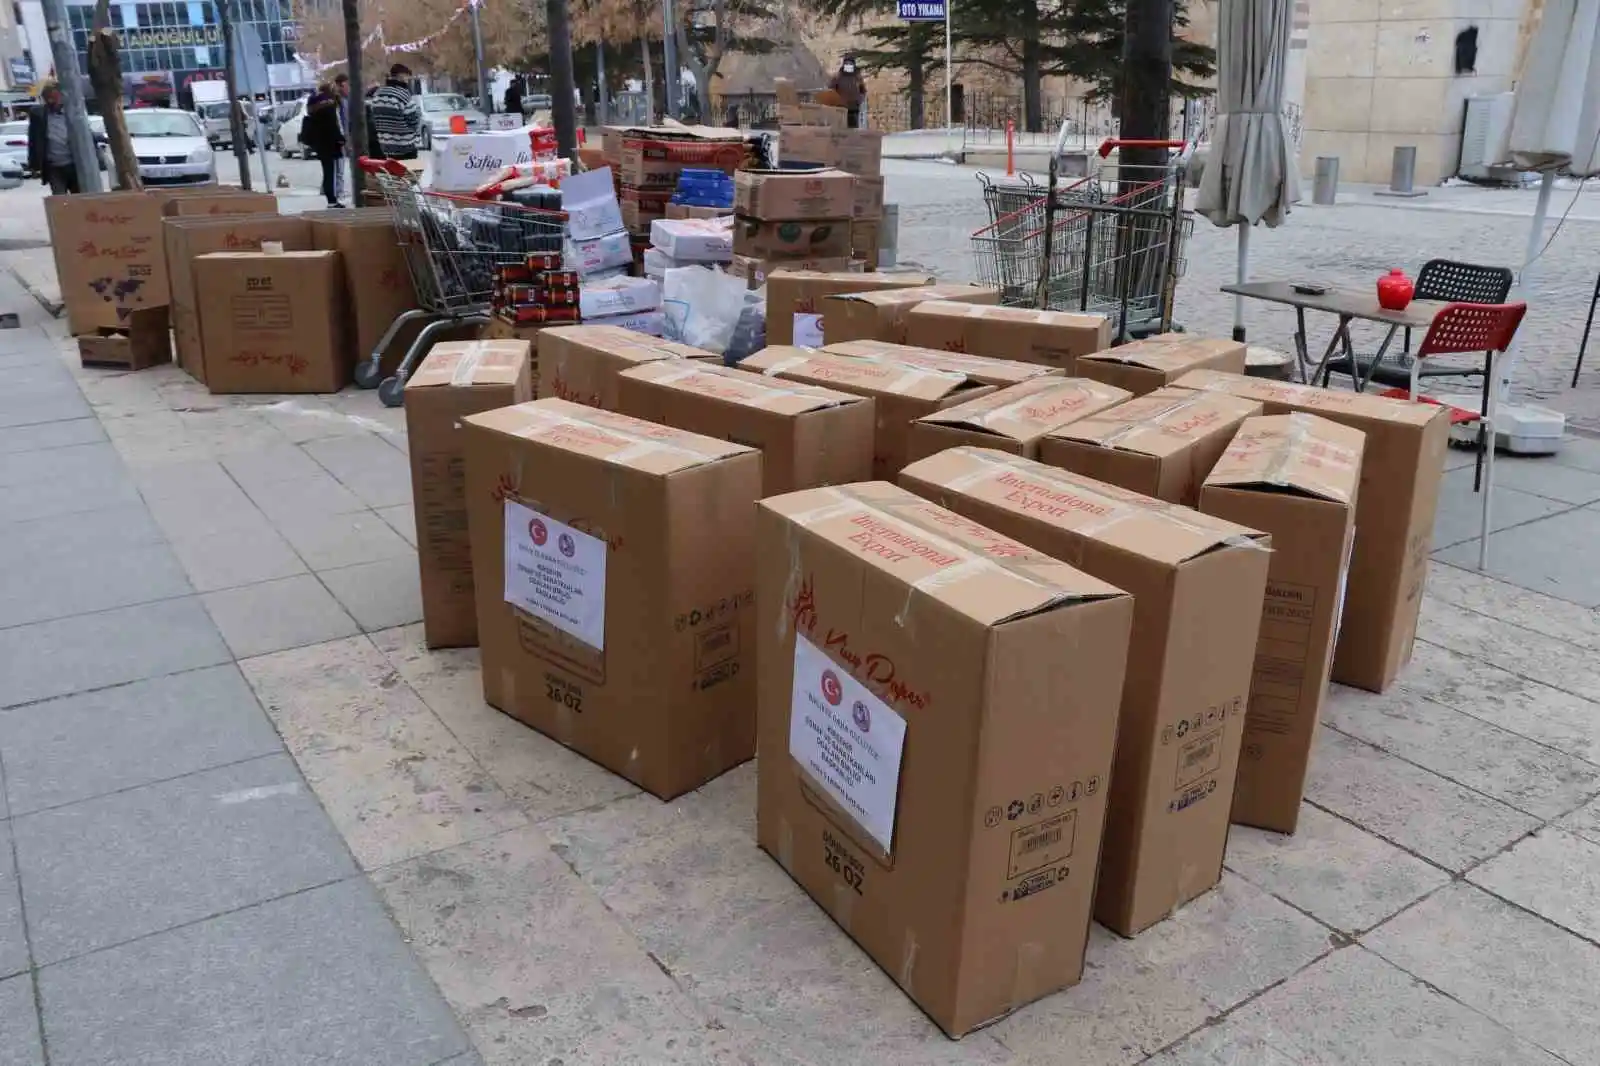 Afet bölgesine Kırşehir'den yardımlar sürüyor
